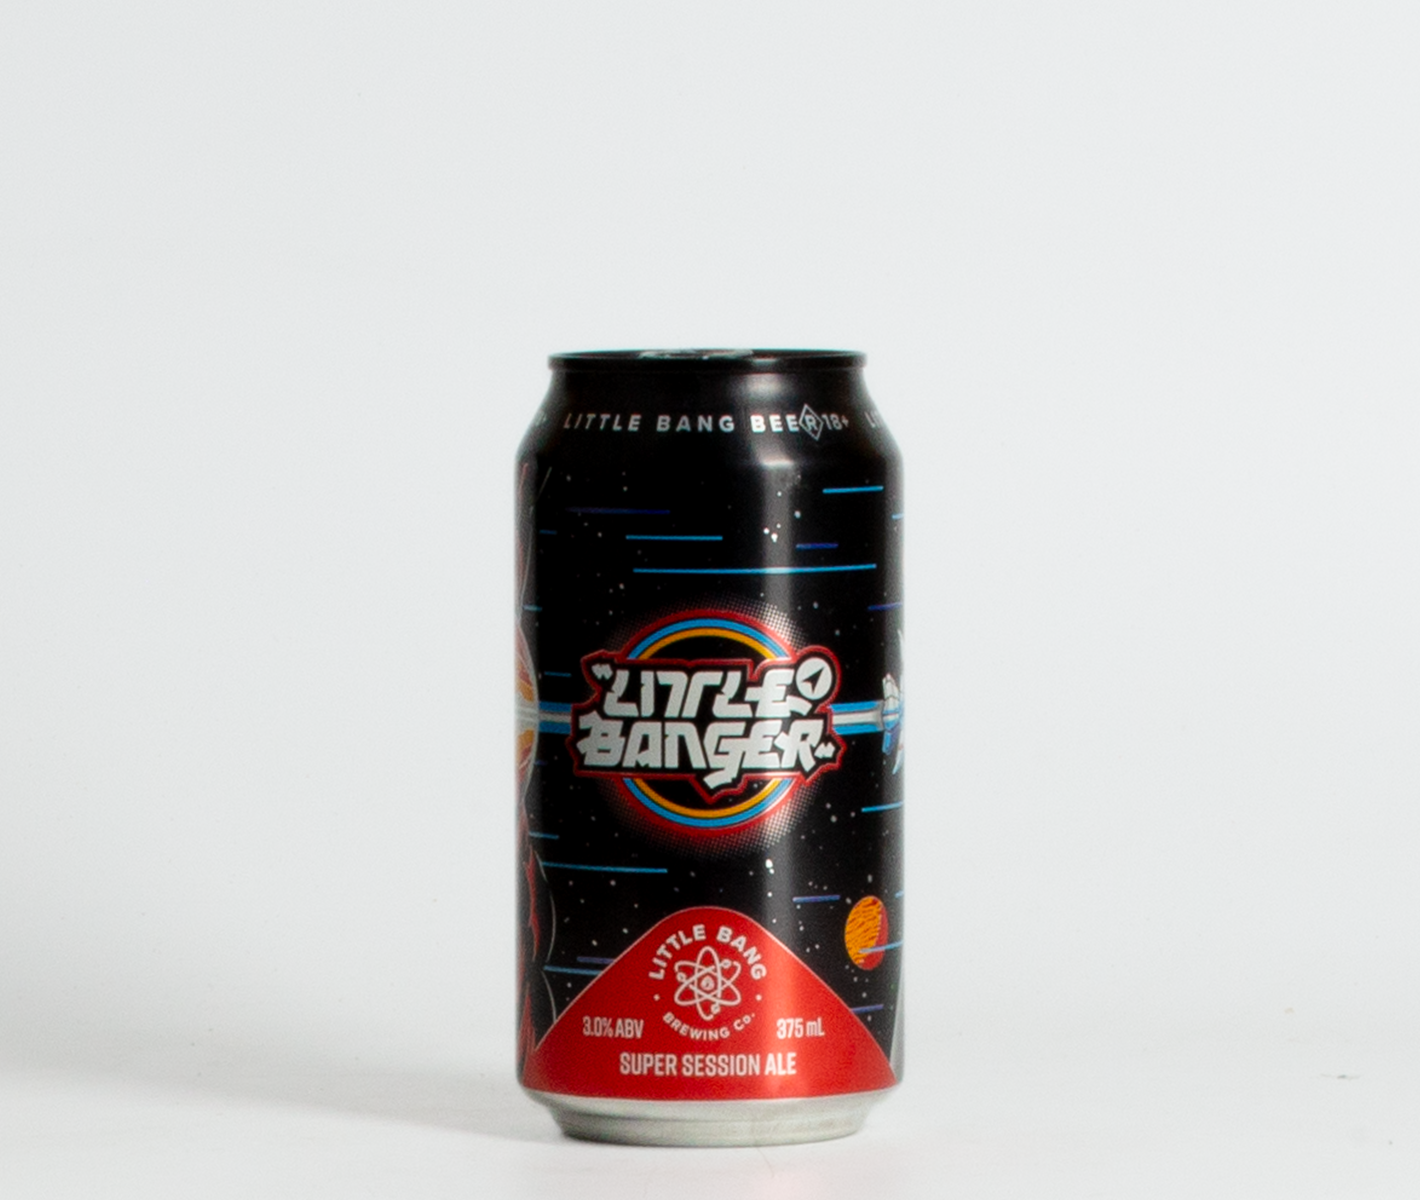 Little Banger Super Session Ale (375ml)